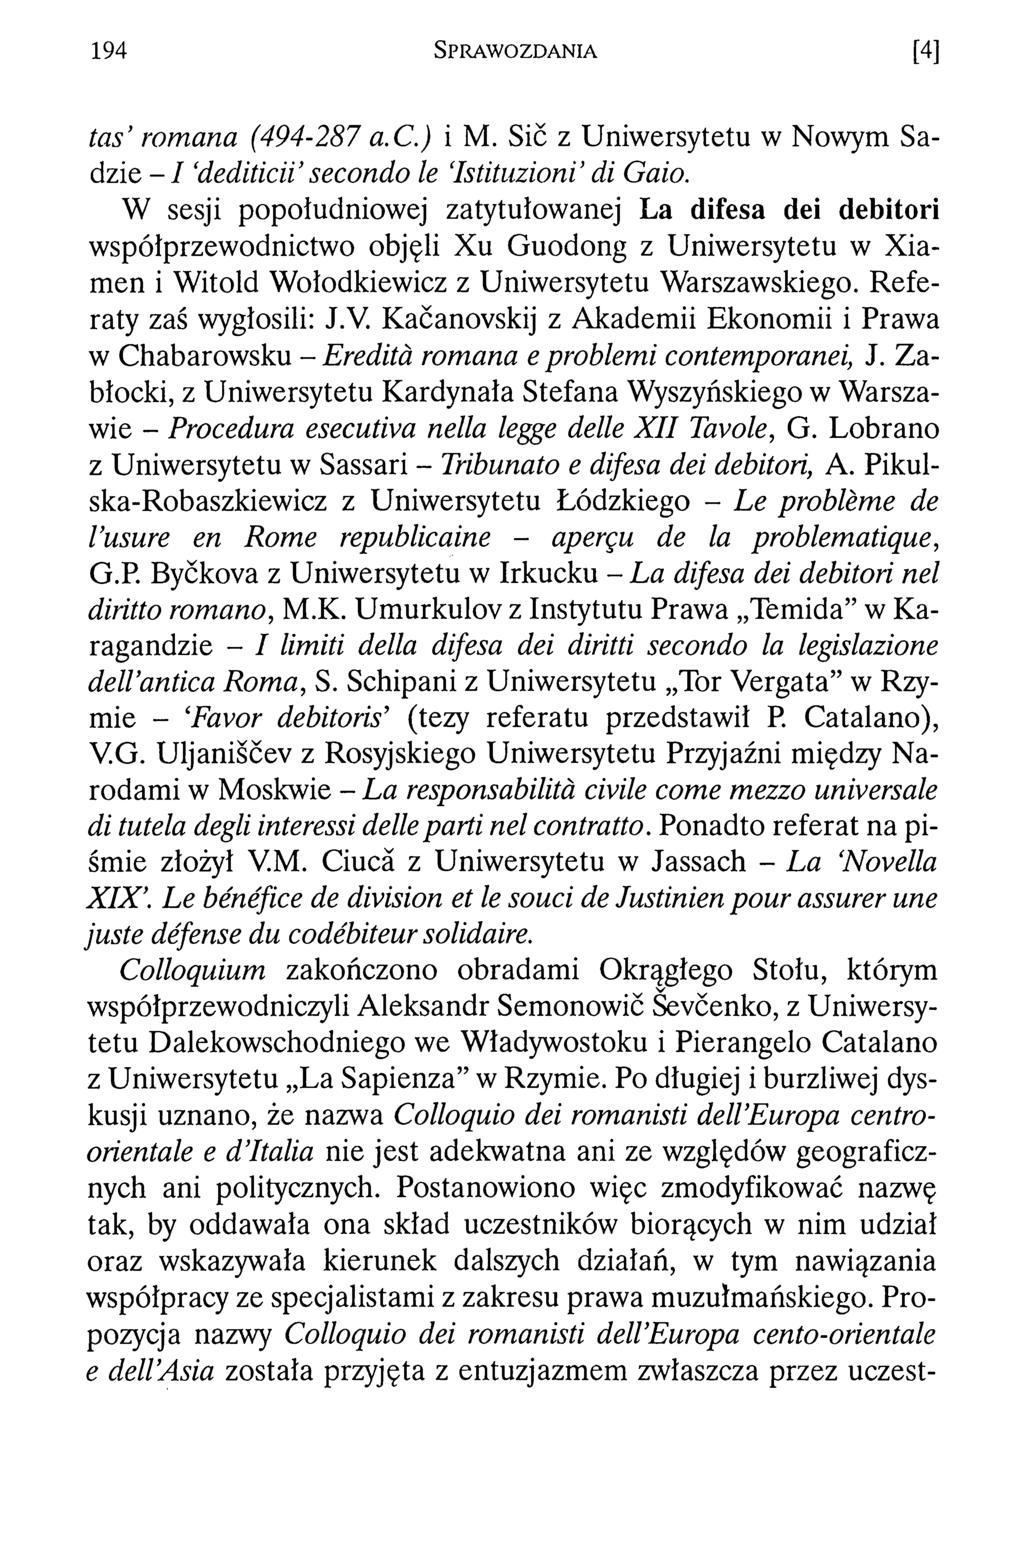 194 S p r a w o z d a n i a [4] tas romana (494-287 a.c.) i M. Sic z Uniwersytetu w Nowym Sadzie - I dediticii secondo le Istituzioni di Gaio.